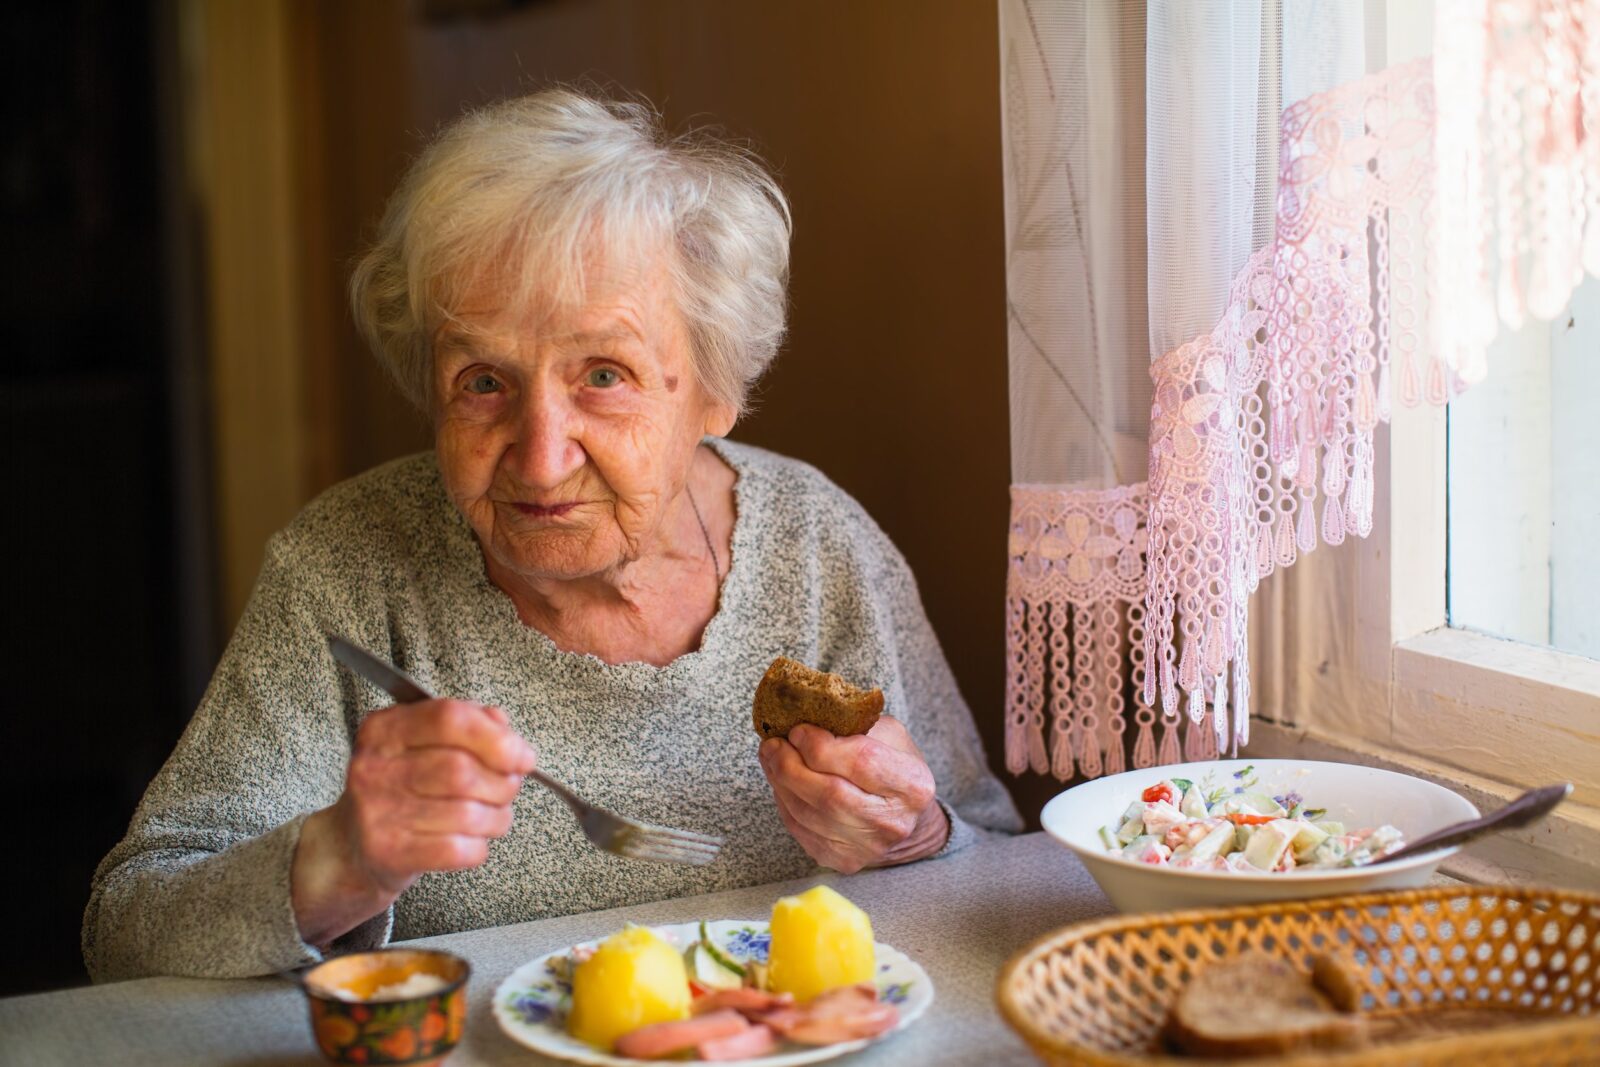 osoby starsze stan odżywienia